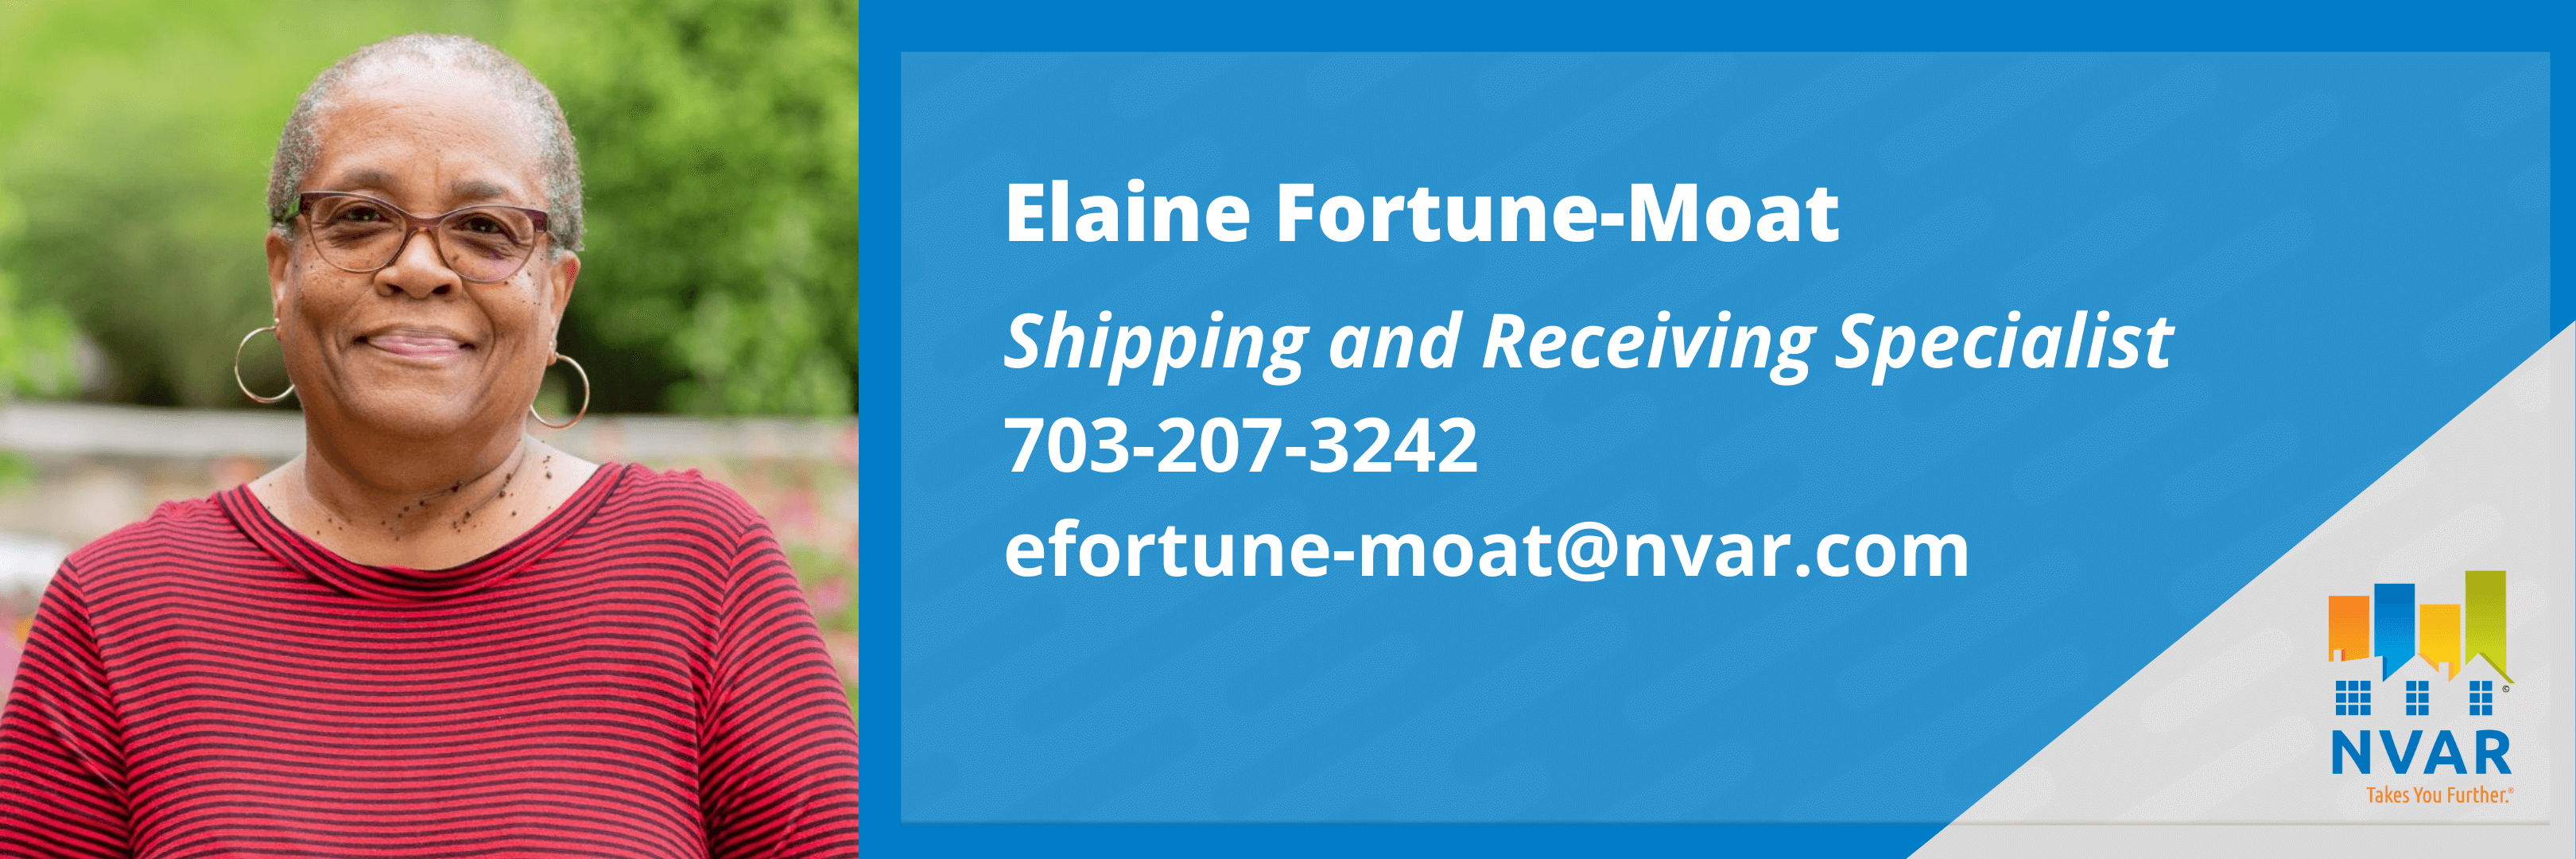 Elaine Fortune-Moat